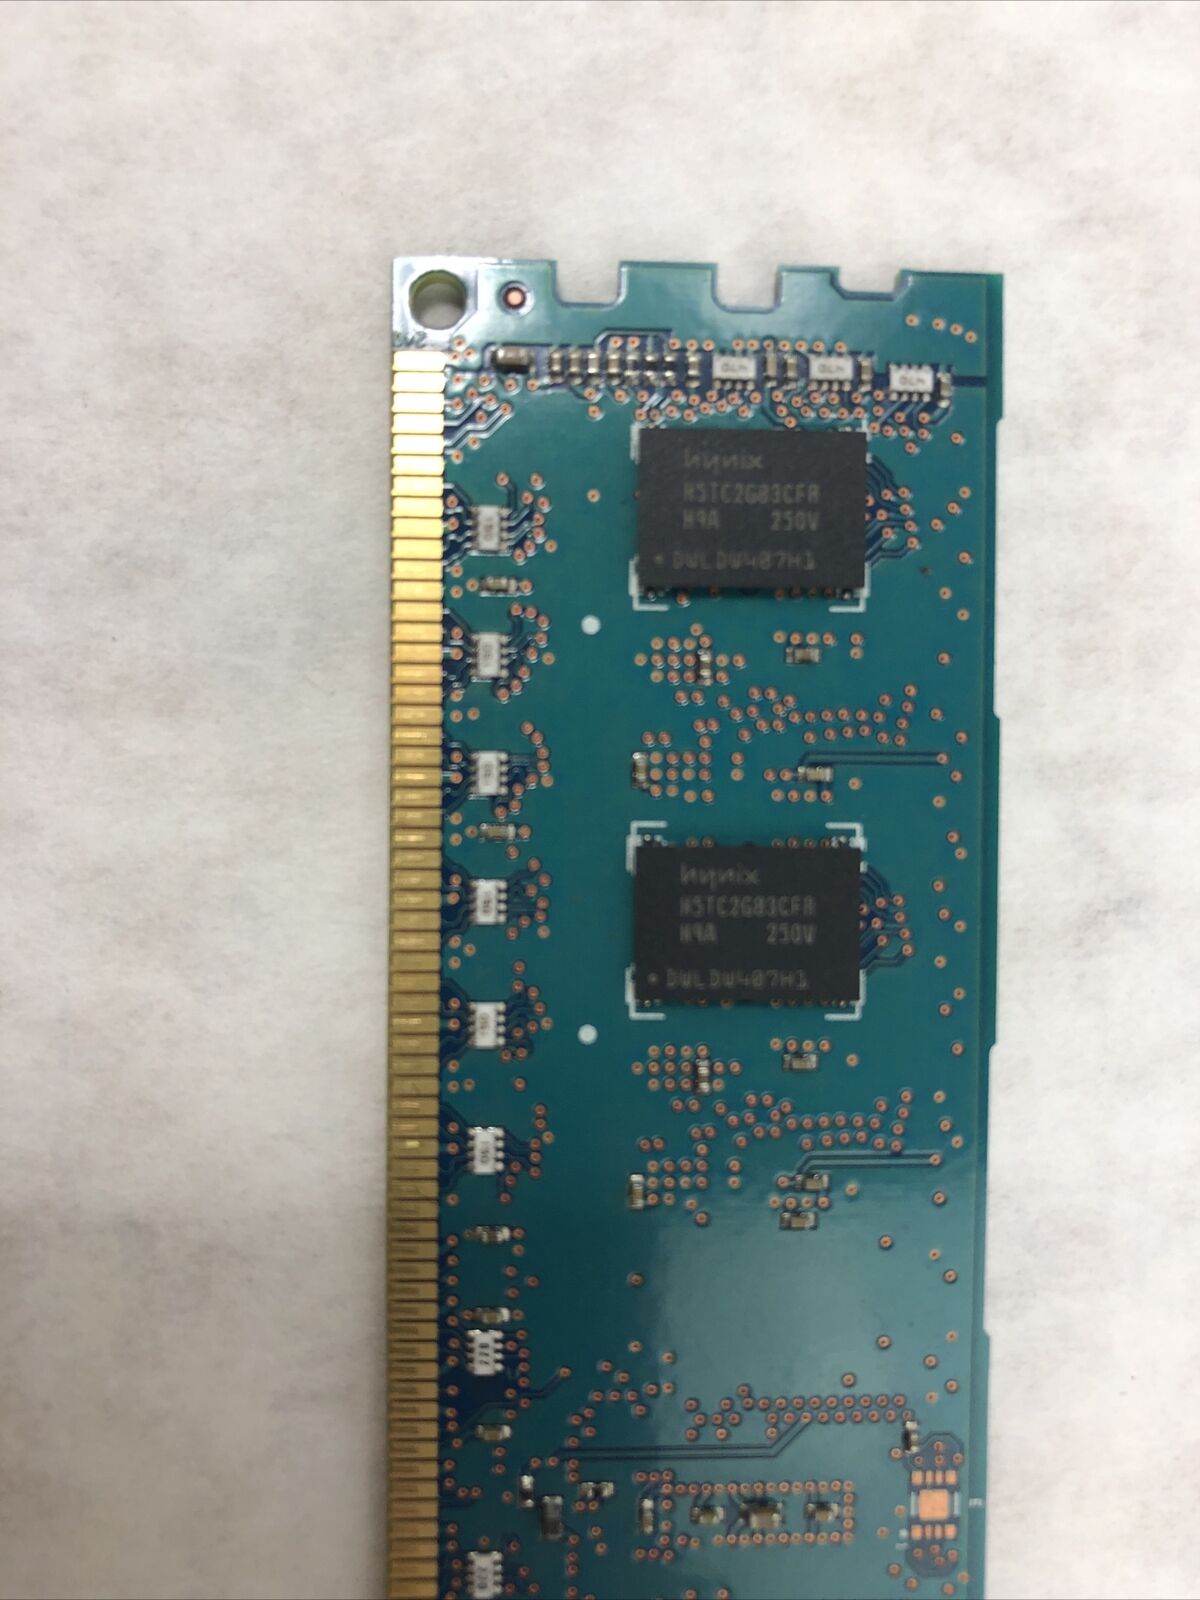 Hynix HMT325R7CFR8A-H9 T8 AD PC3L-10600R 2GB DDR3 Memory